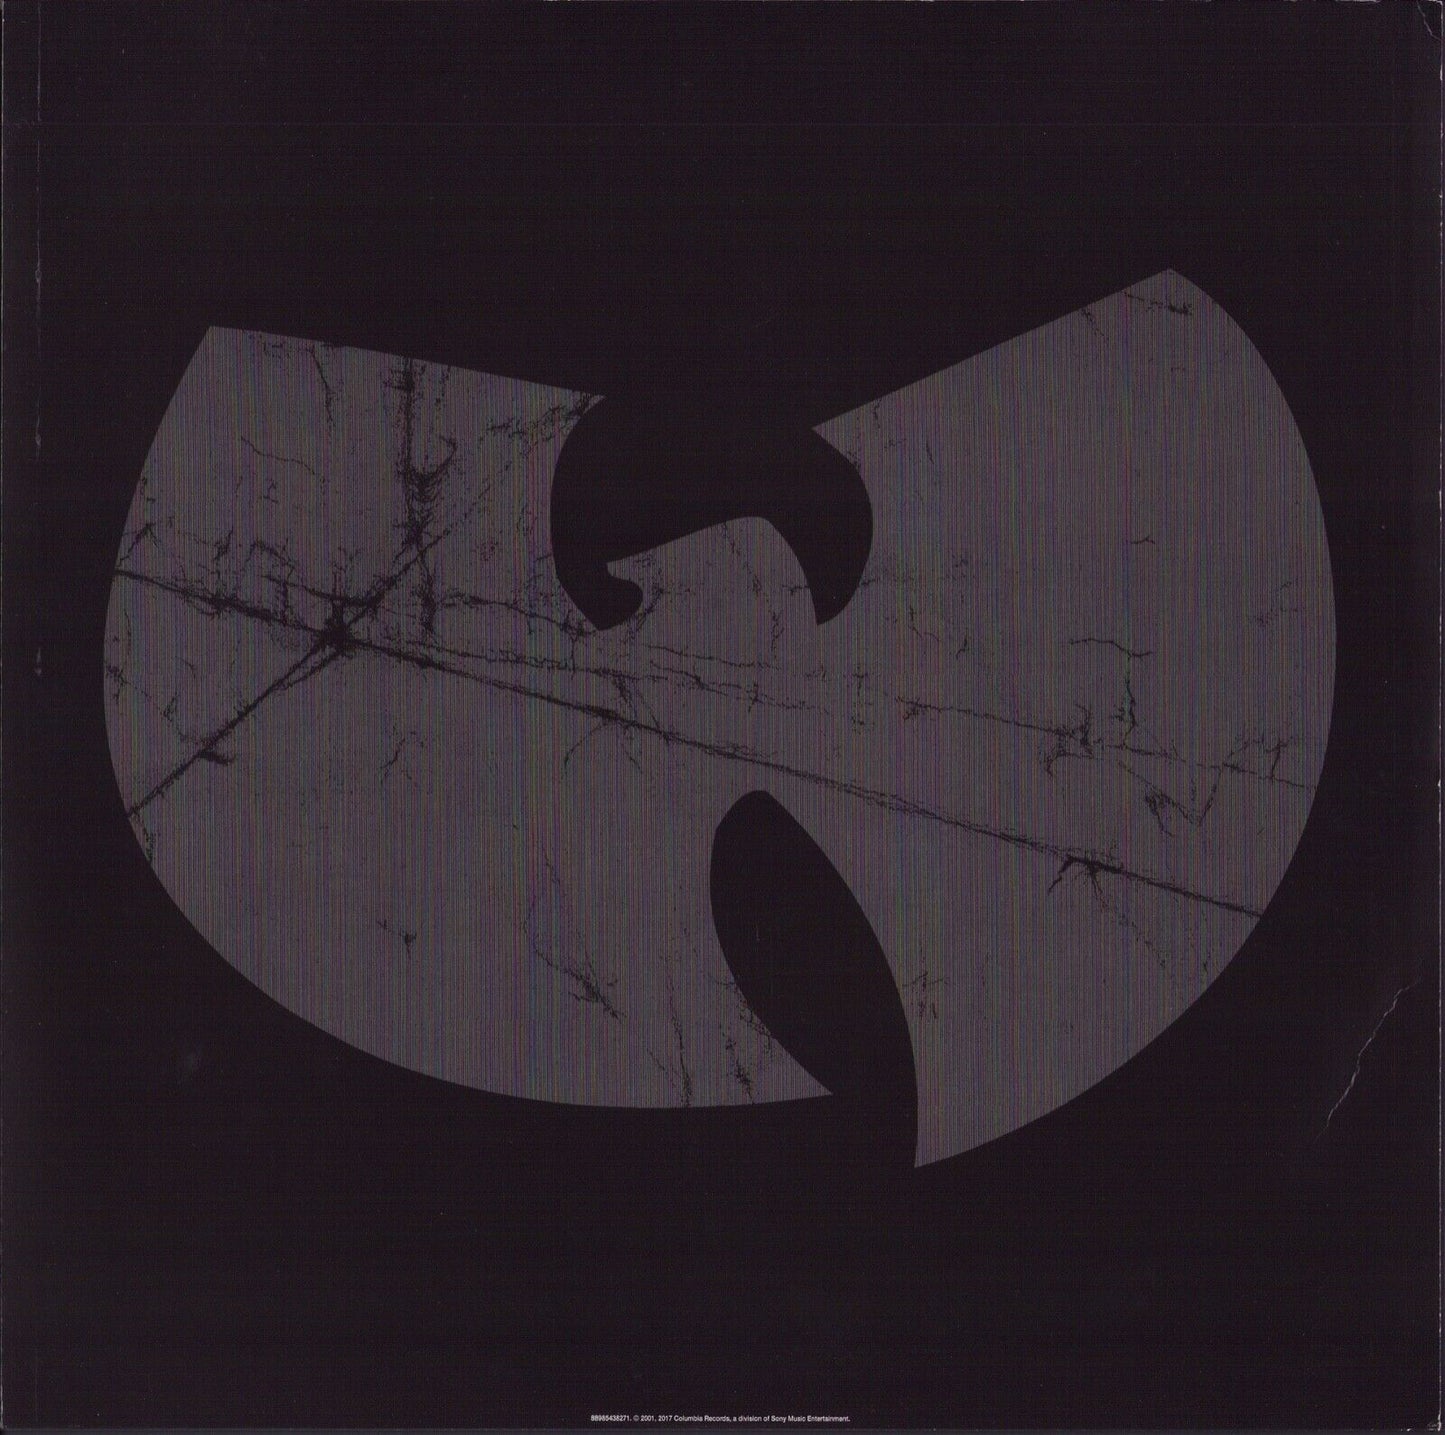 Wu-Tang Clan ‎- Iron Flag Vinyl 2LP